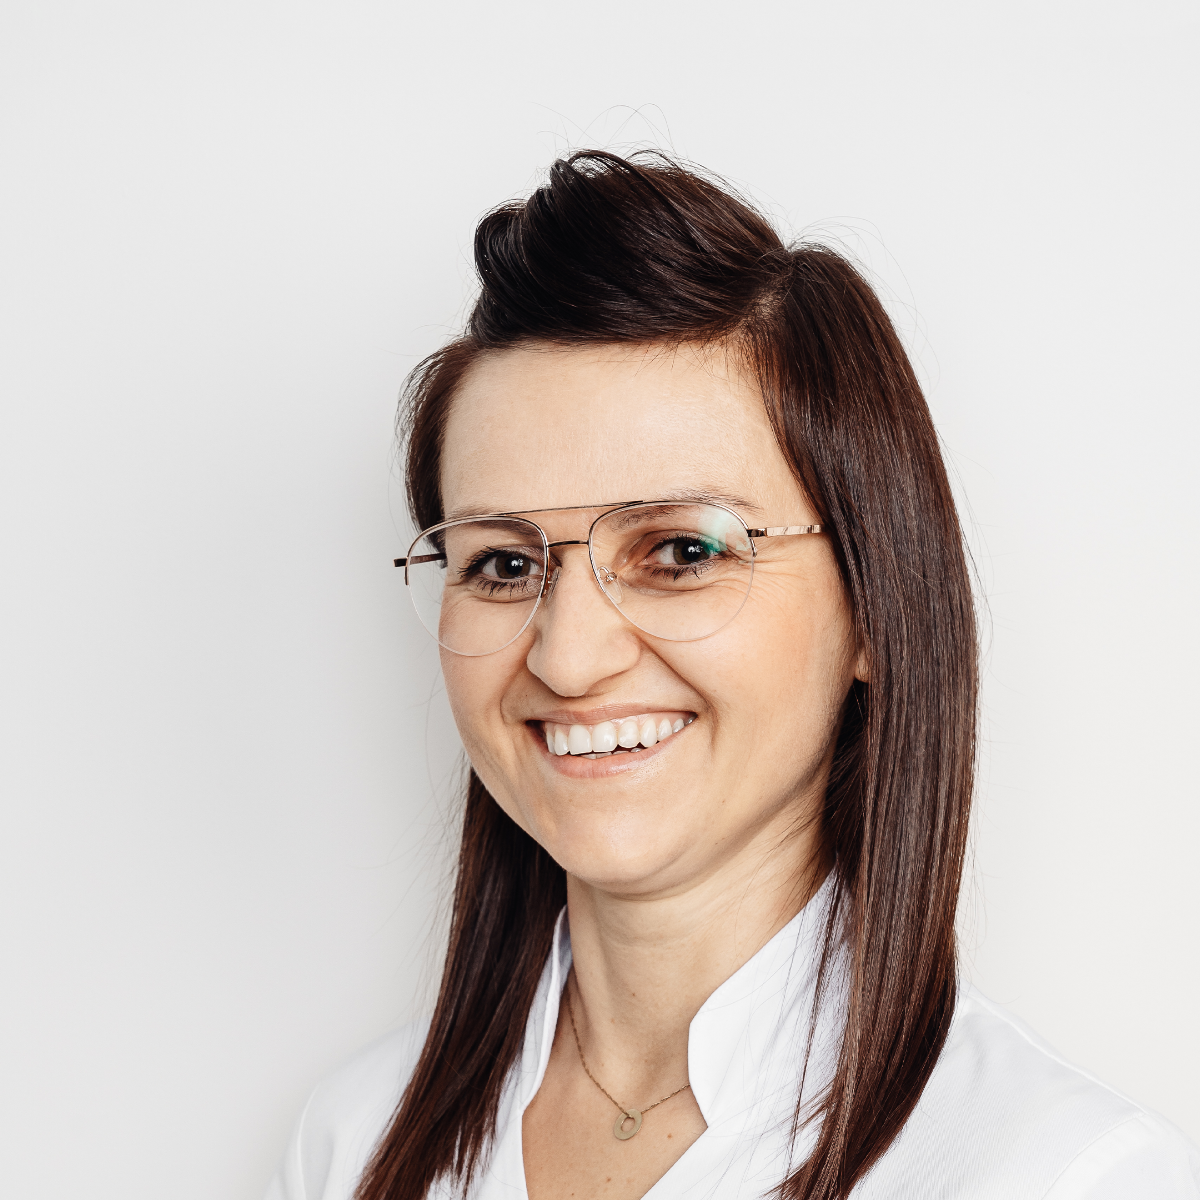 Magdalena Cyran, higienistka stomatologiczna oraz asystentka stomatologiczna w gabinecie stomatologicznym EstiDental w Krakowie